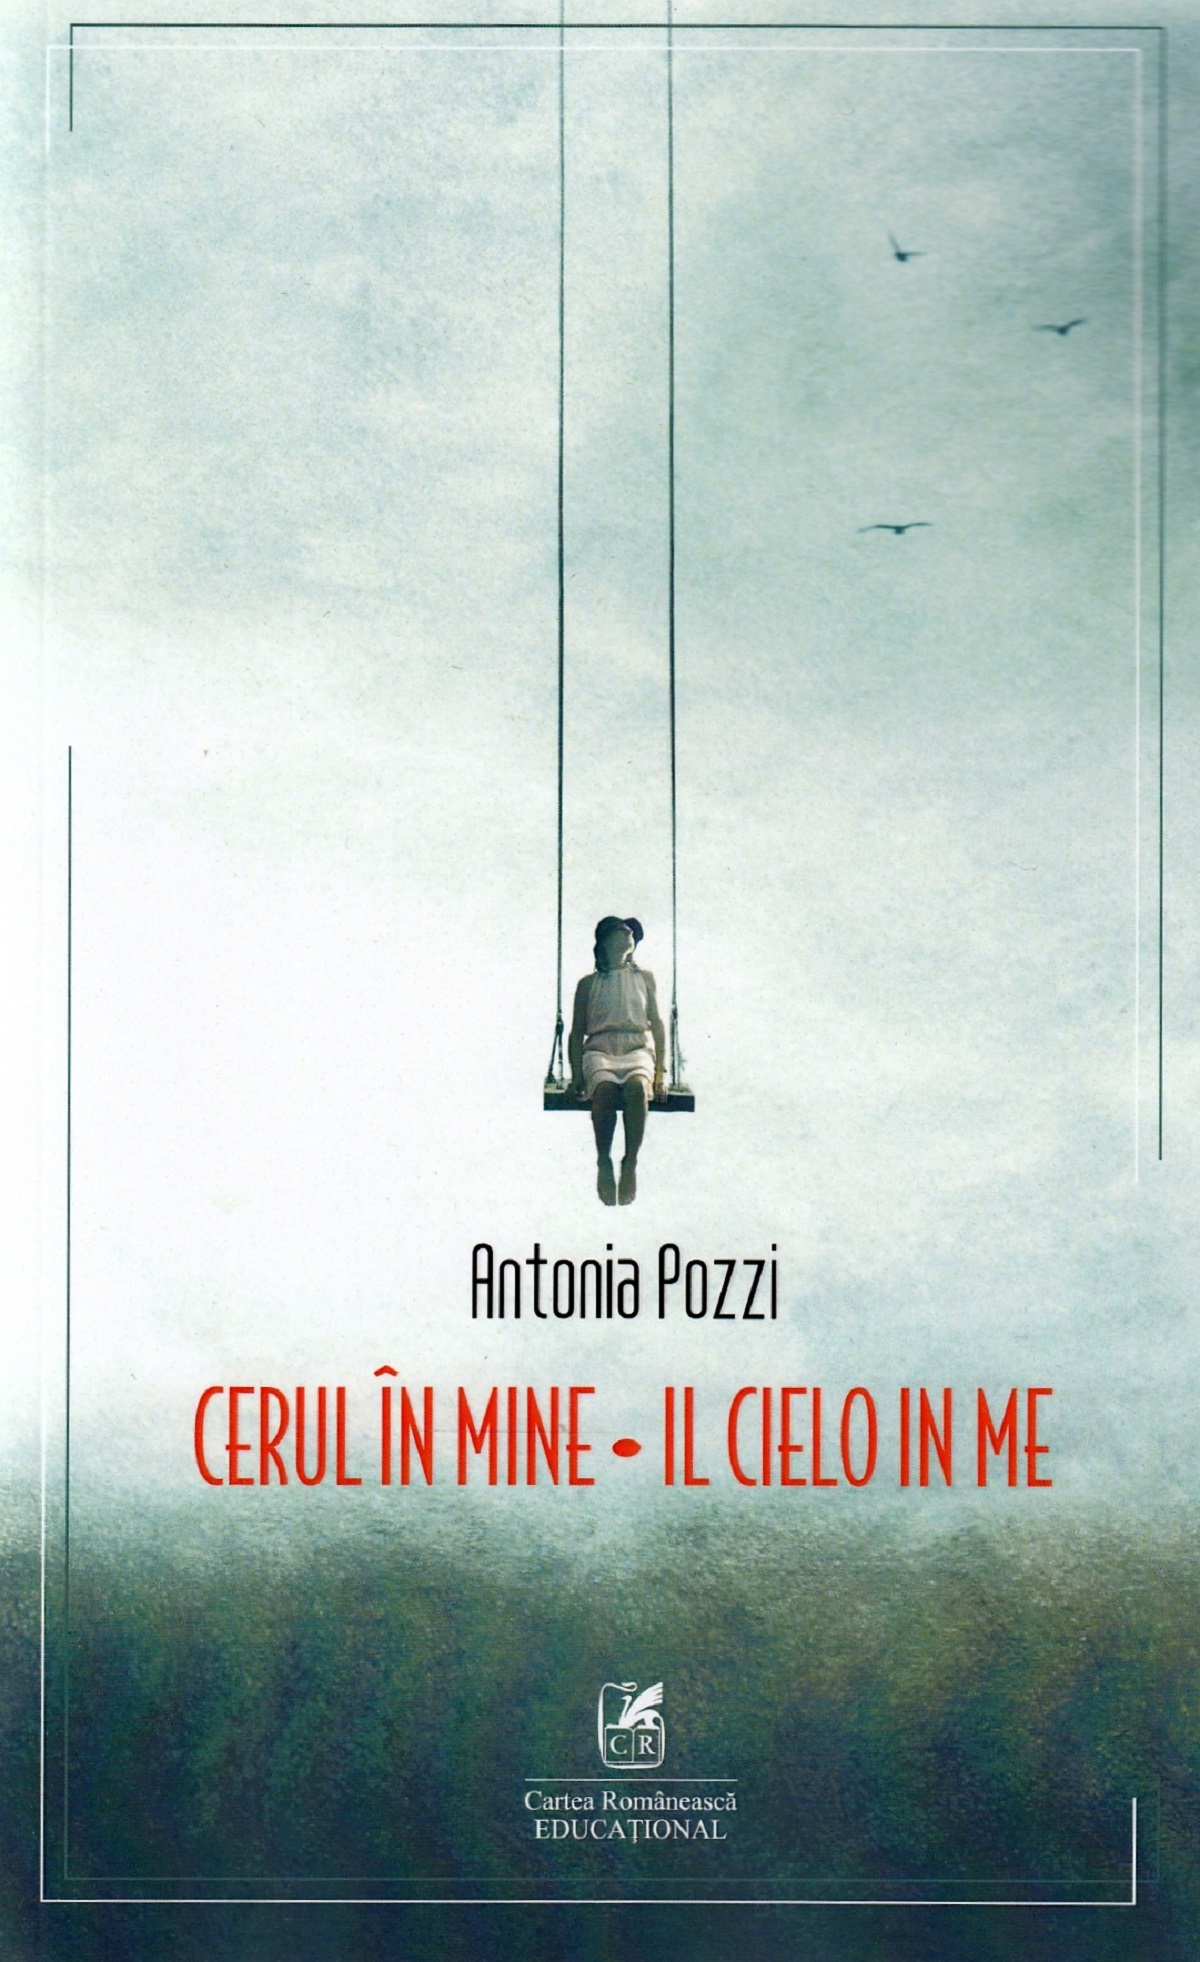 Cerul in mine | Antonia Pozzi Cartea Romaneasca educational Carte